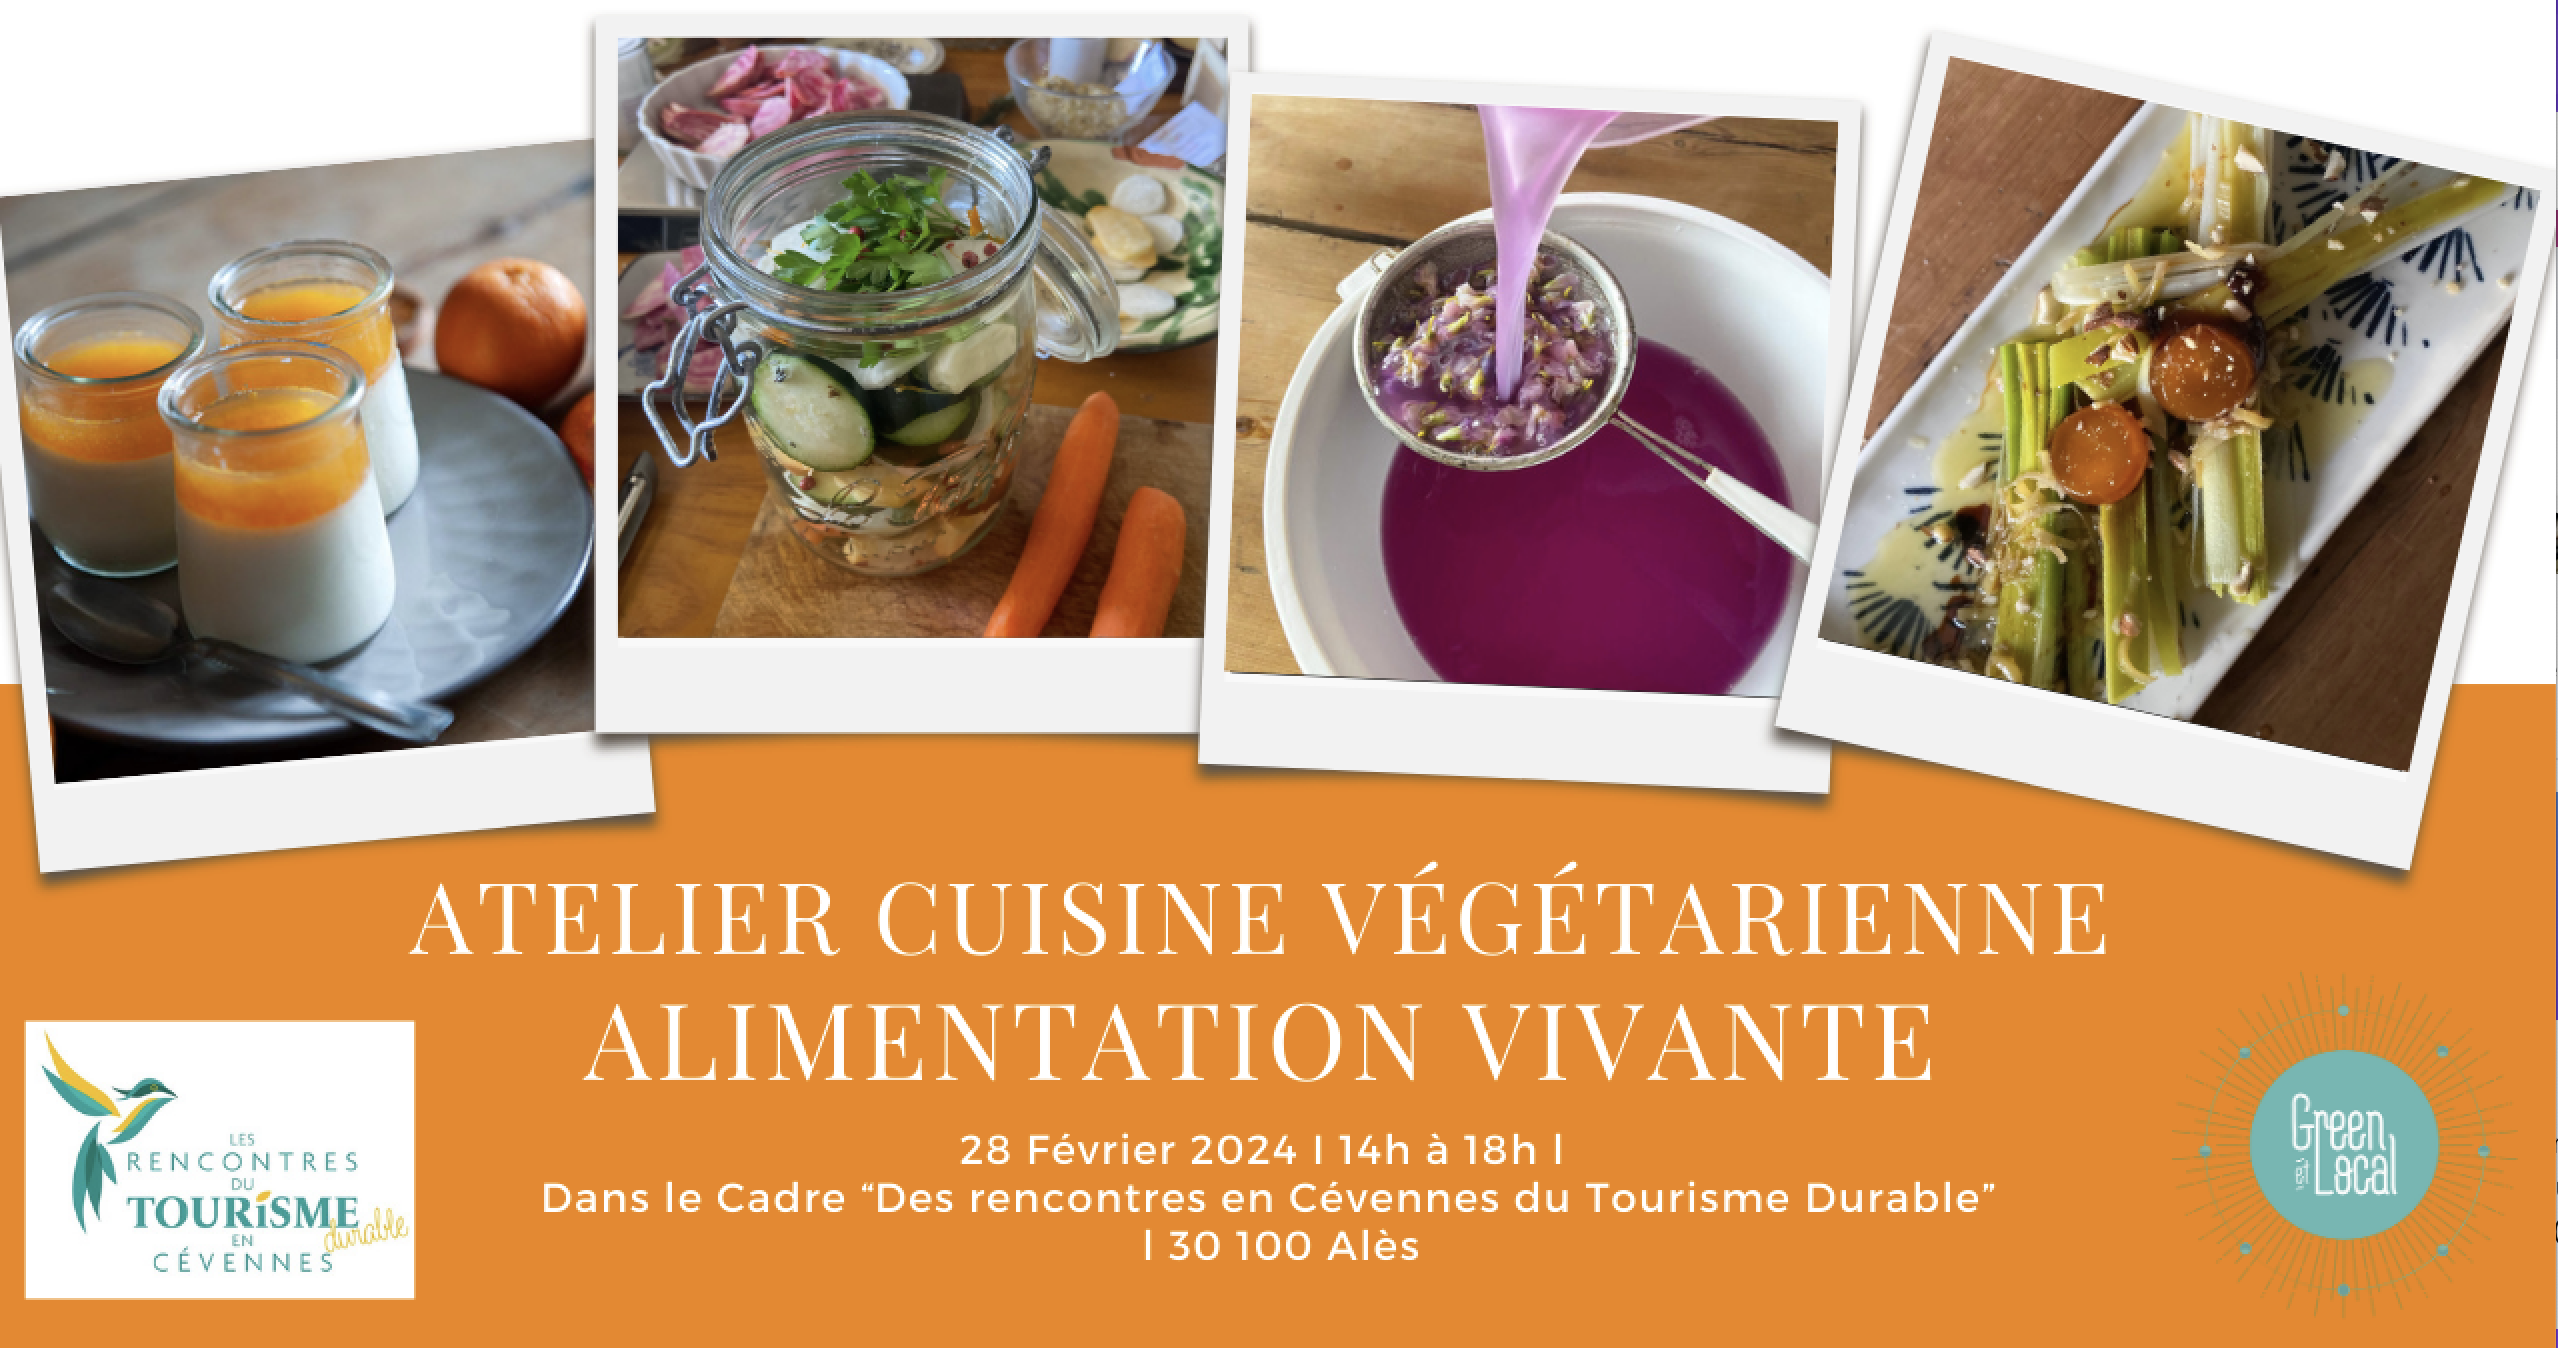 Atelier-de-cuisine-vegetarienne-rencontres-du tourisme-en cévennes-durable-green-et-local-le)green-lab